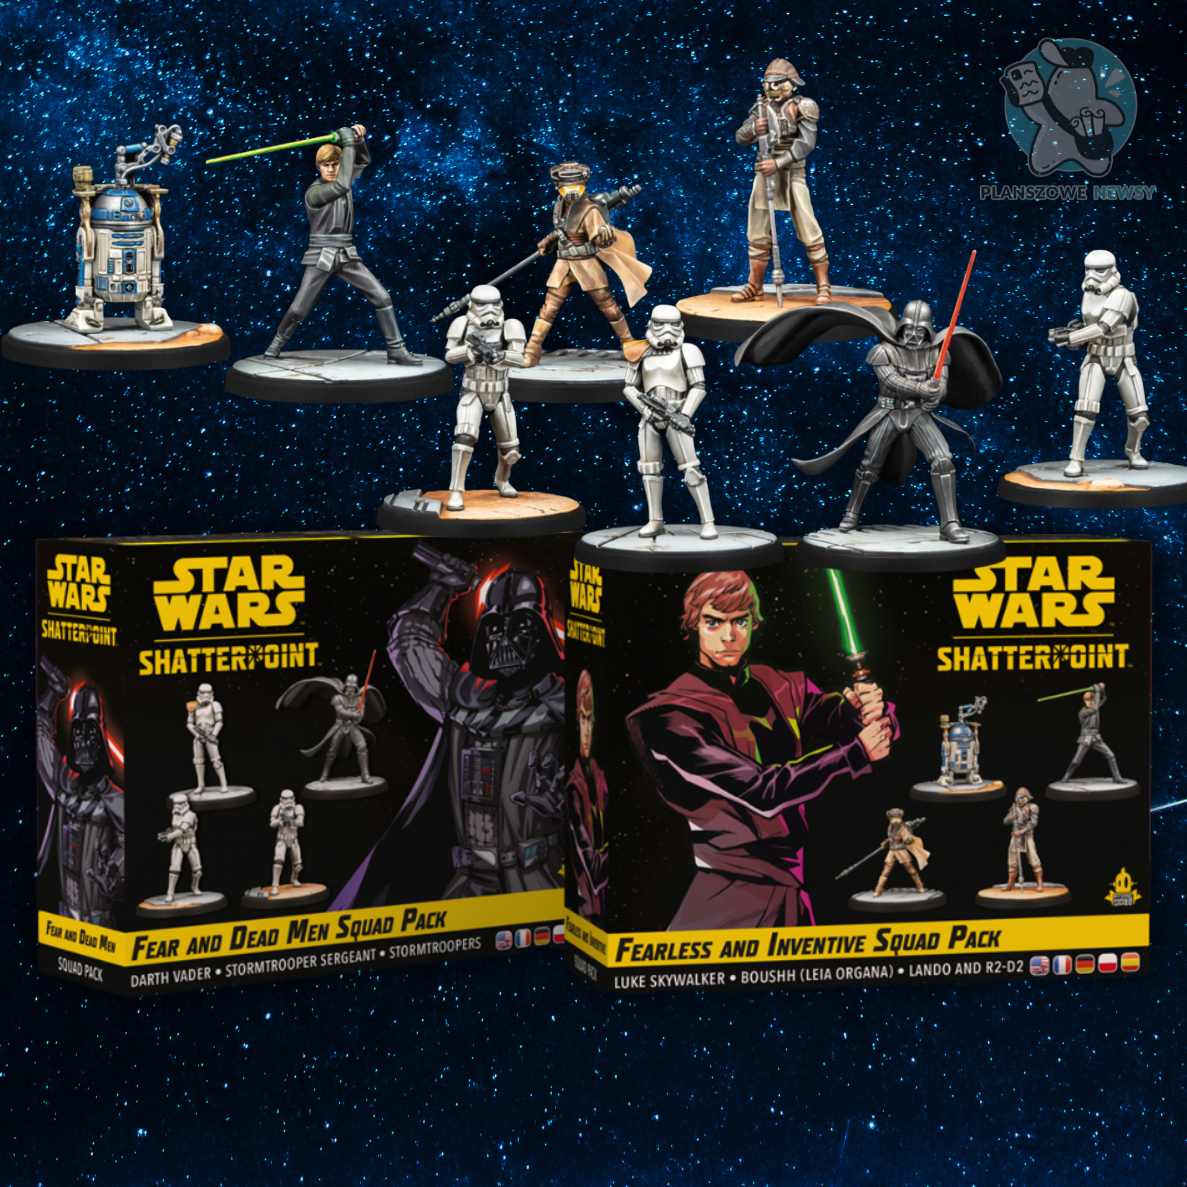 Star Wars Shatterpoint - pudełka dodatków i figurki